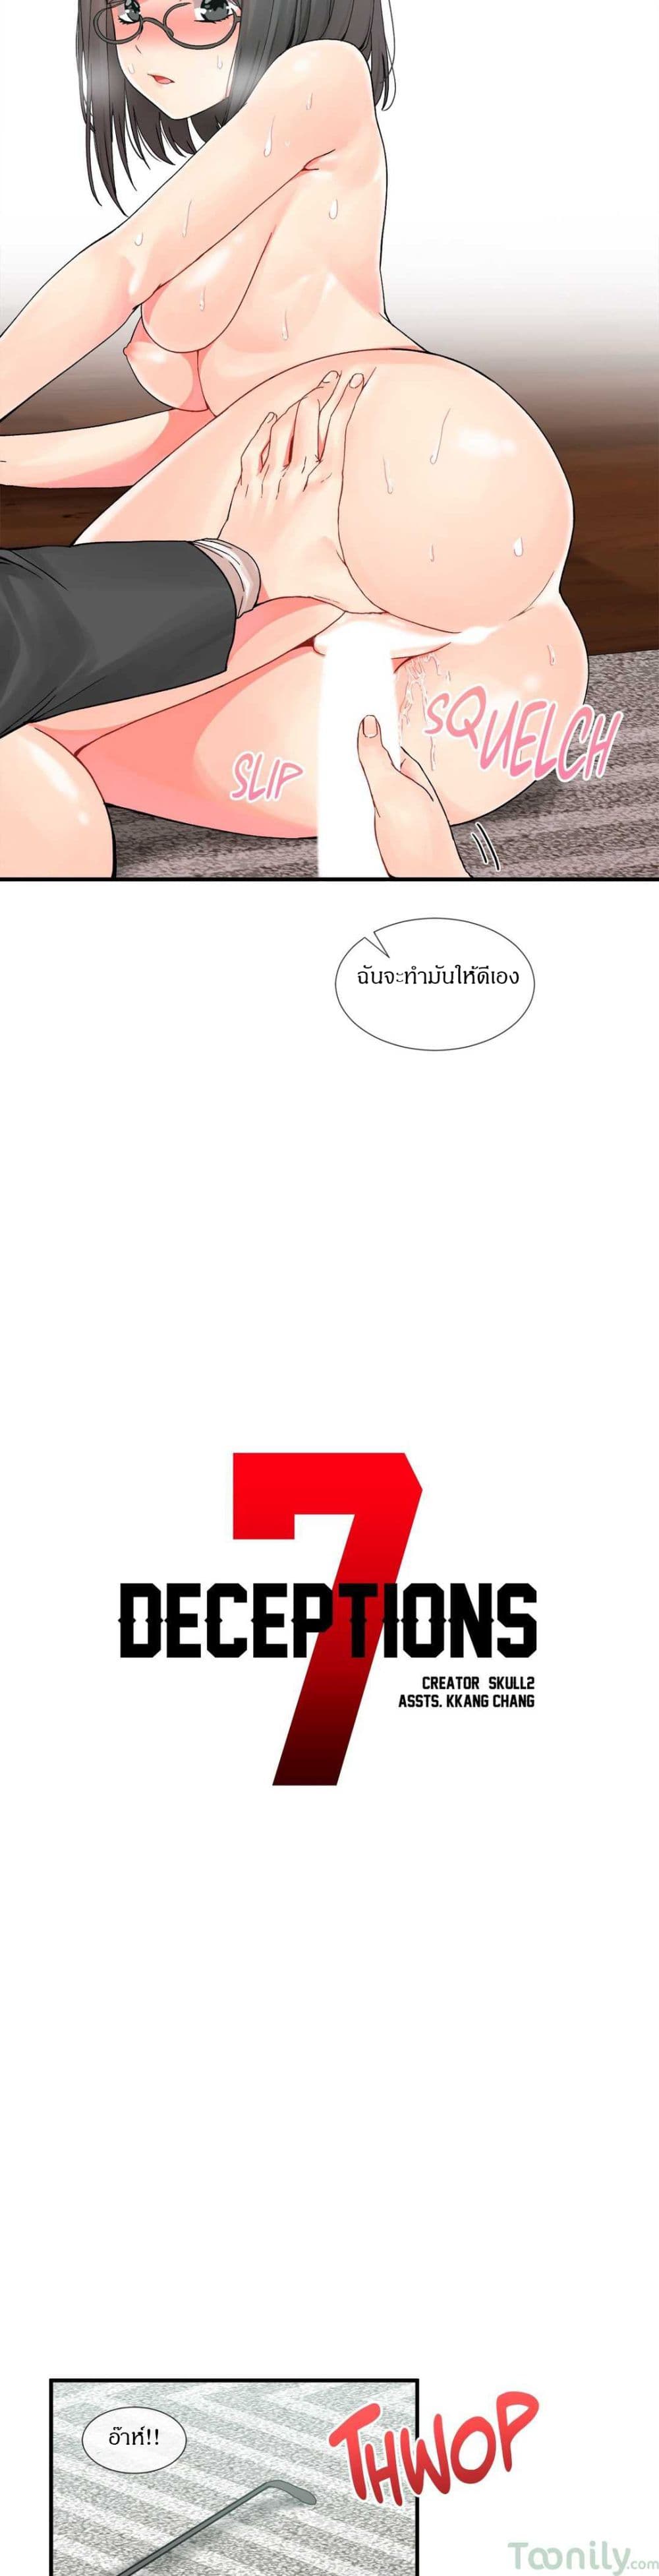 DeceptionsÃ Â¸â€¢Ã Â¸Â­Ã Â¸â„¢Ã Â¸â€”Ã Â¸ÂµÃ Â¹Ë†6 (12)